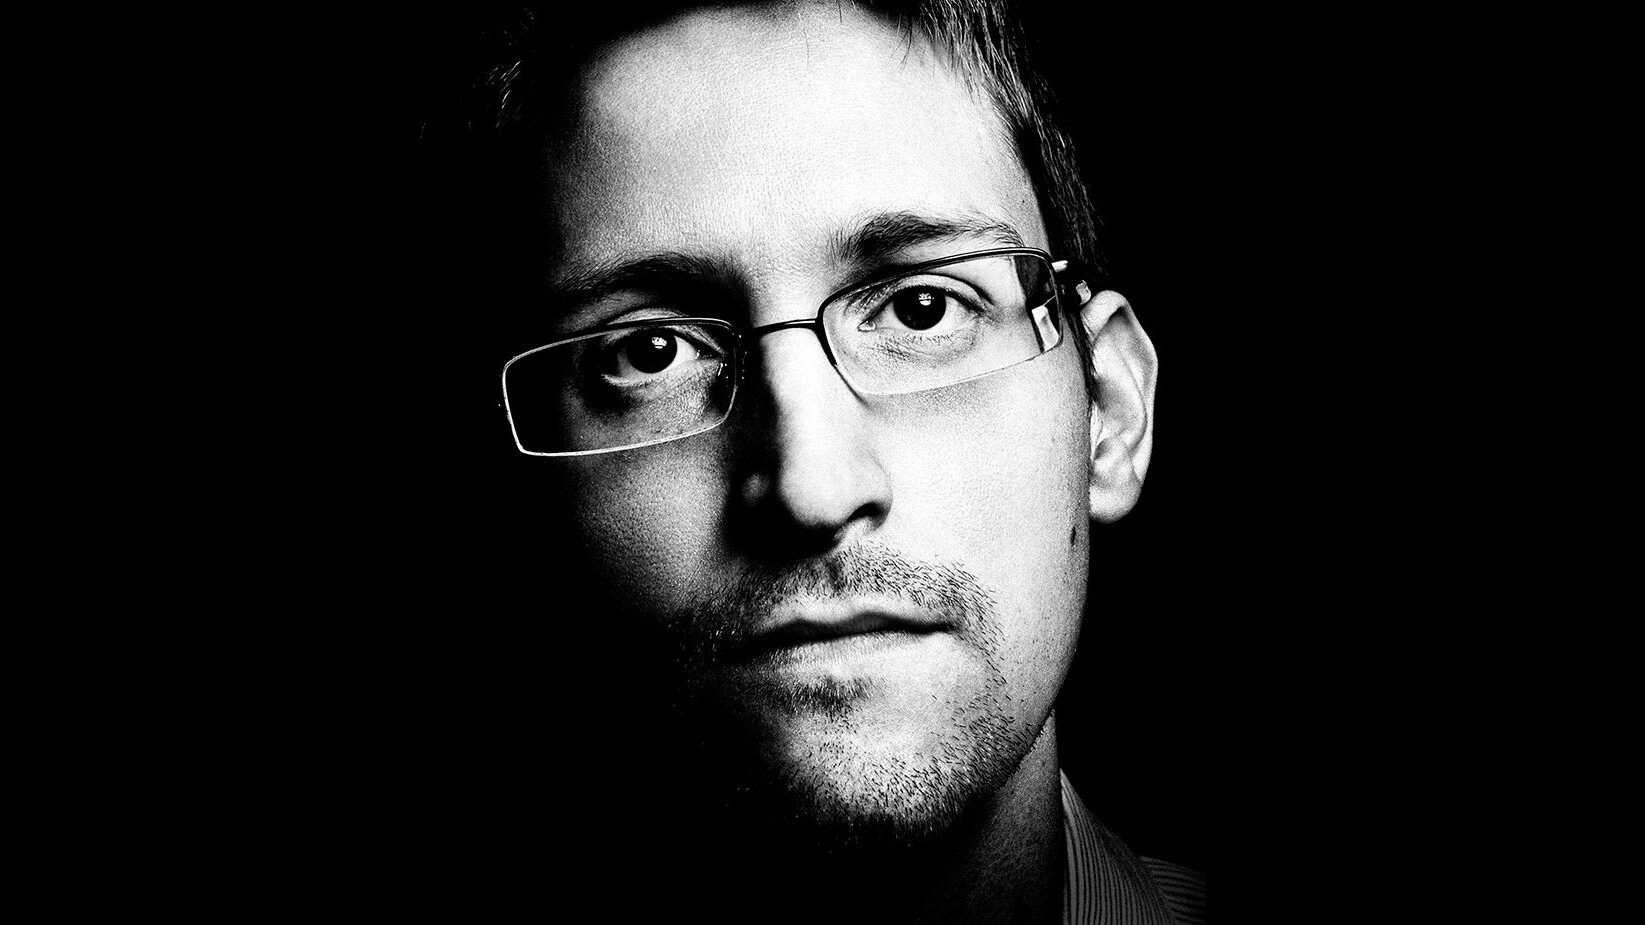 Ein Bild von Edward Snowden, einem Mann mit Brille und Bart.